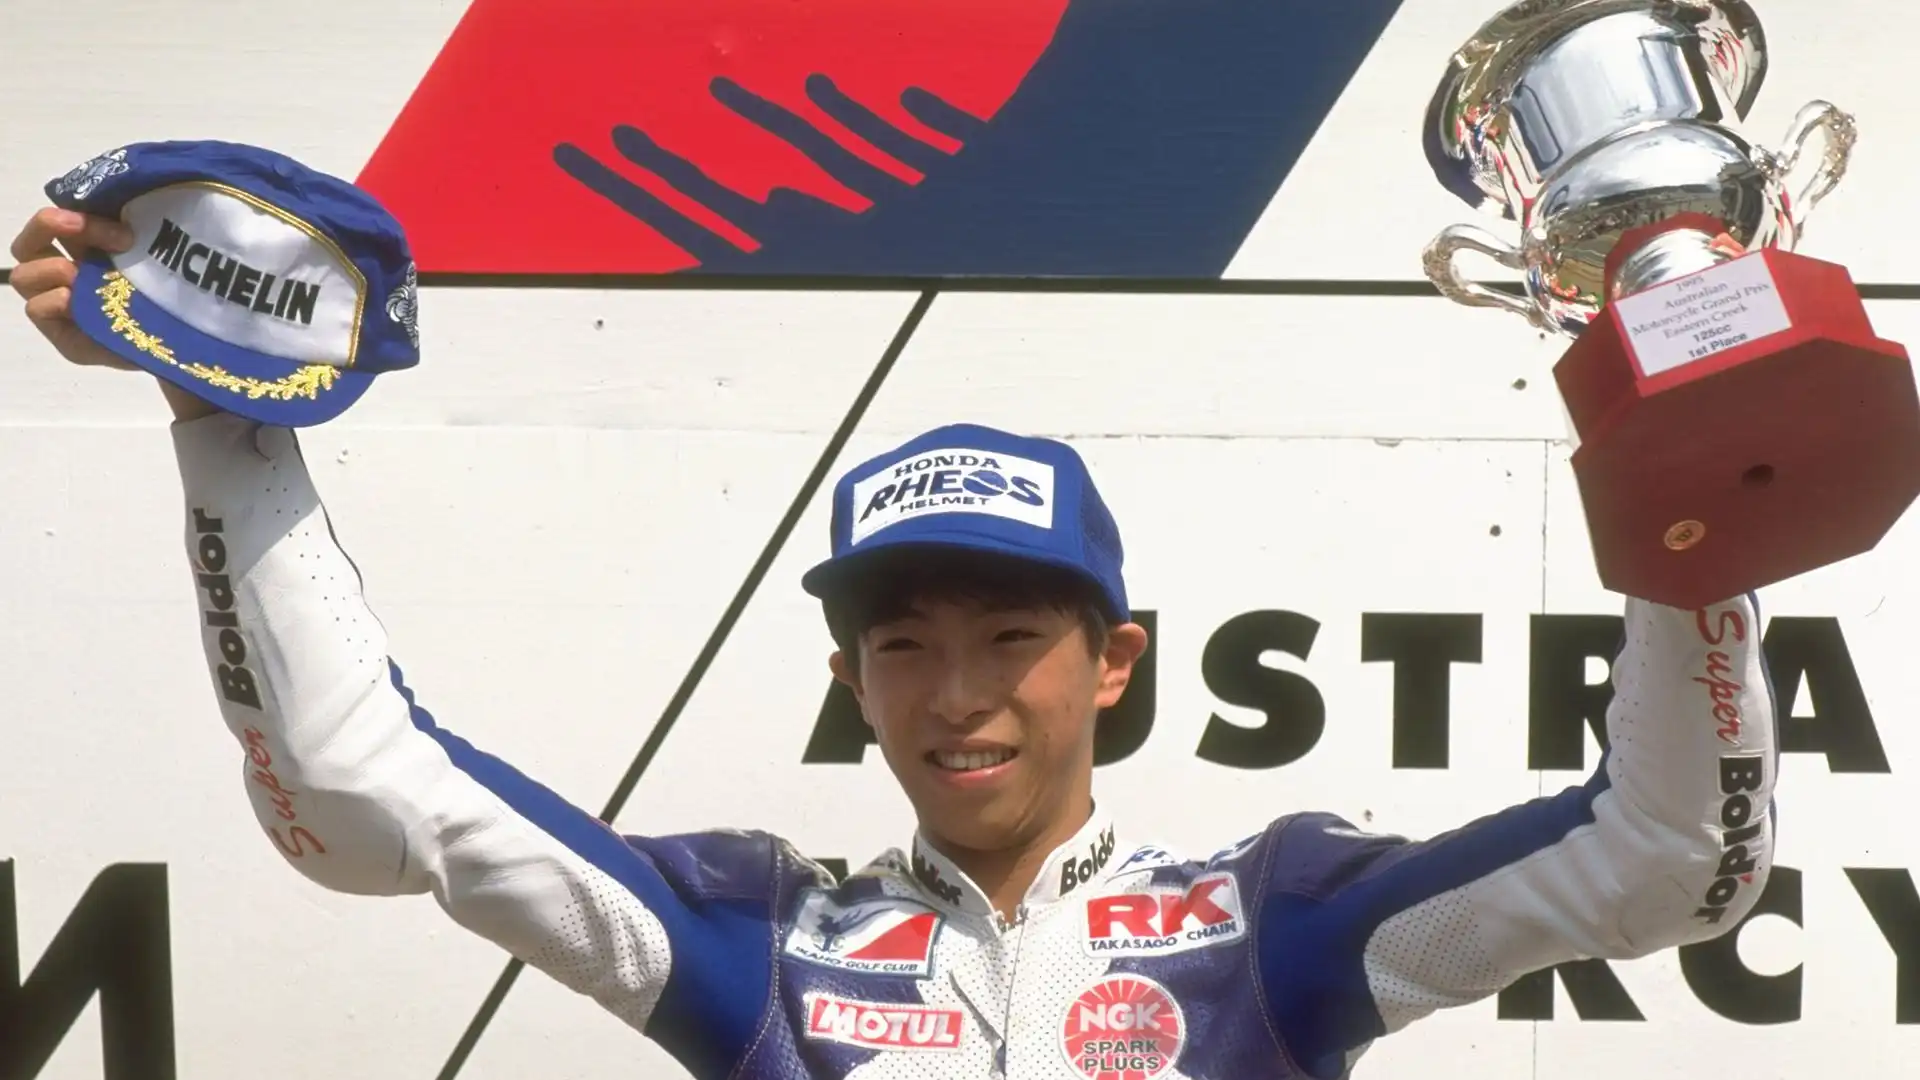 Haruchika Aoki: ha vinto due Mondiali nel 1995 e nel 1996 in classe 125, guidava una moto Honda. Venti podi in carriera